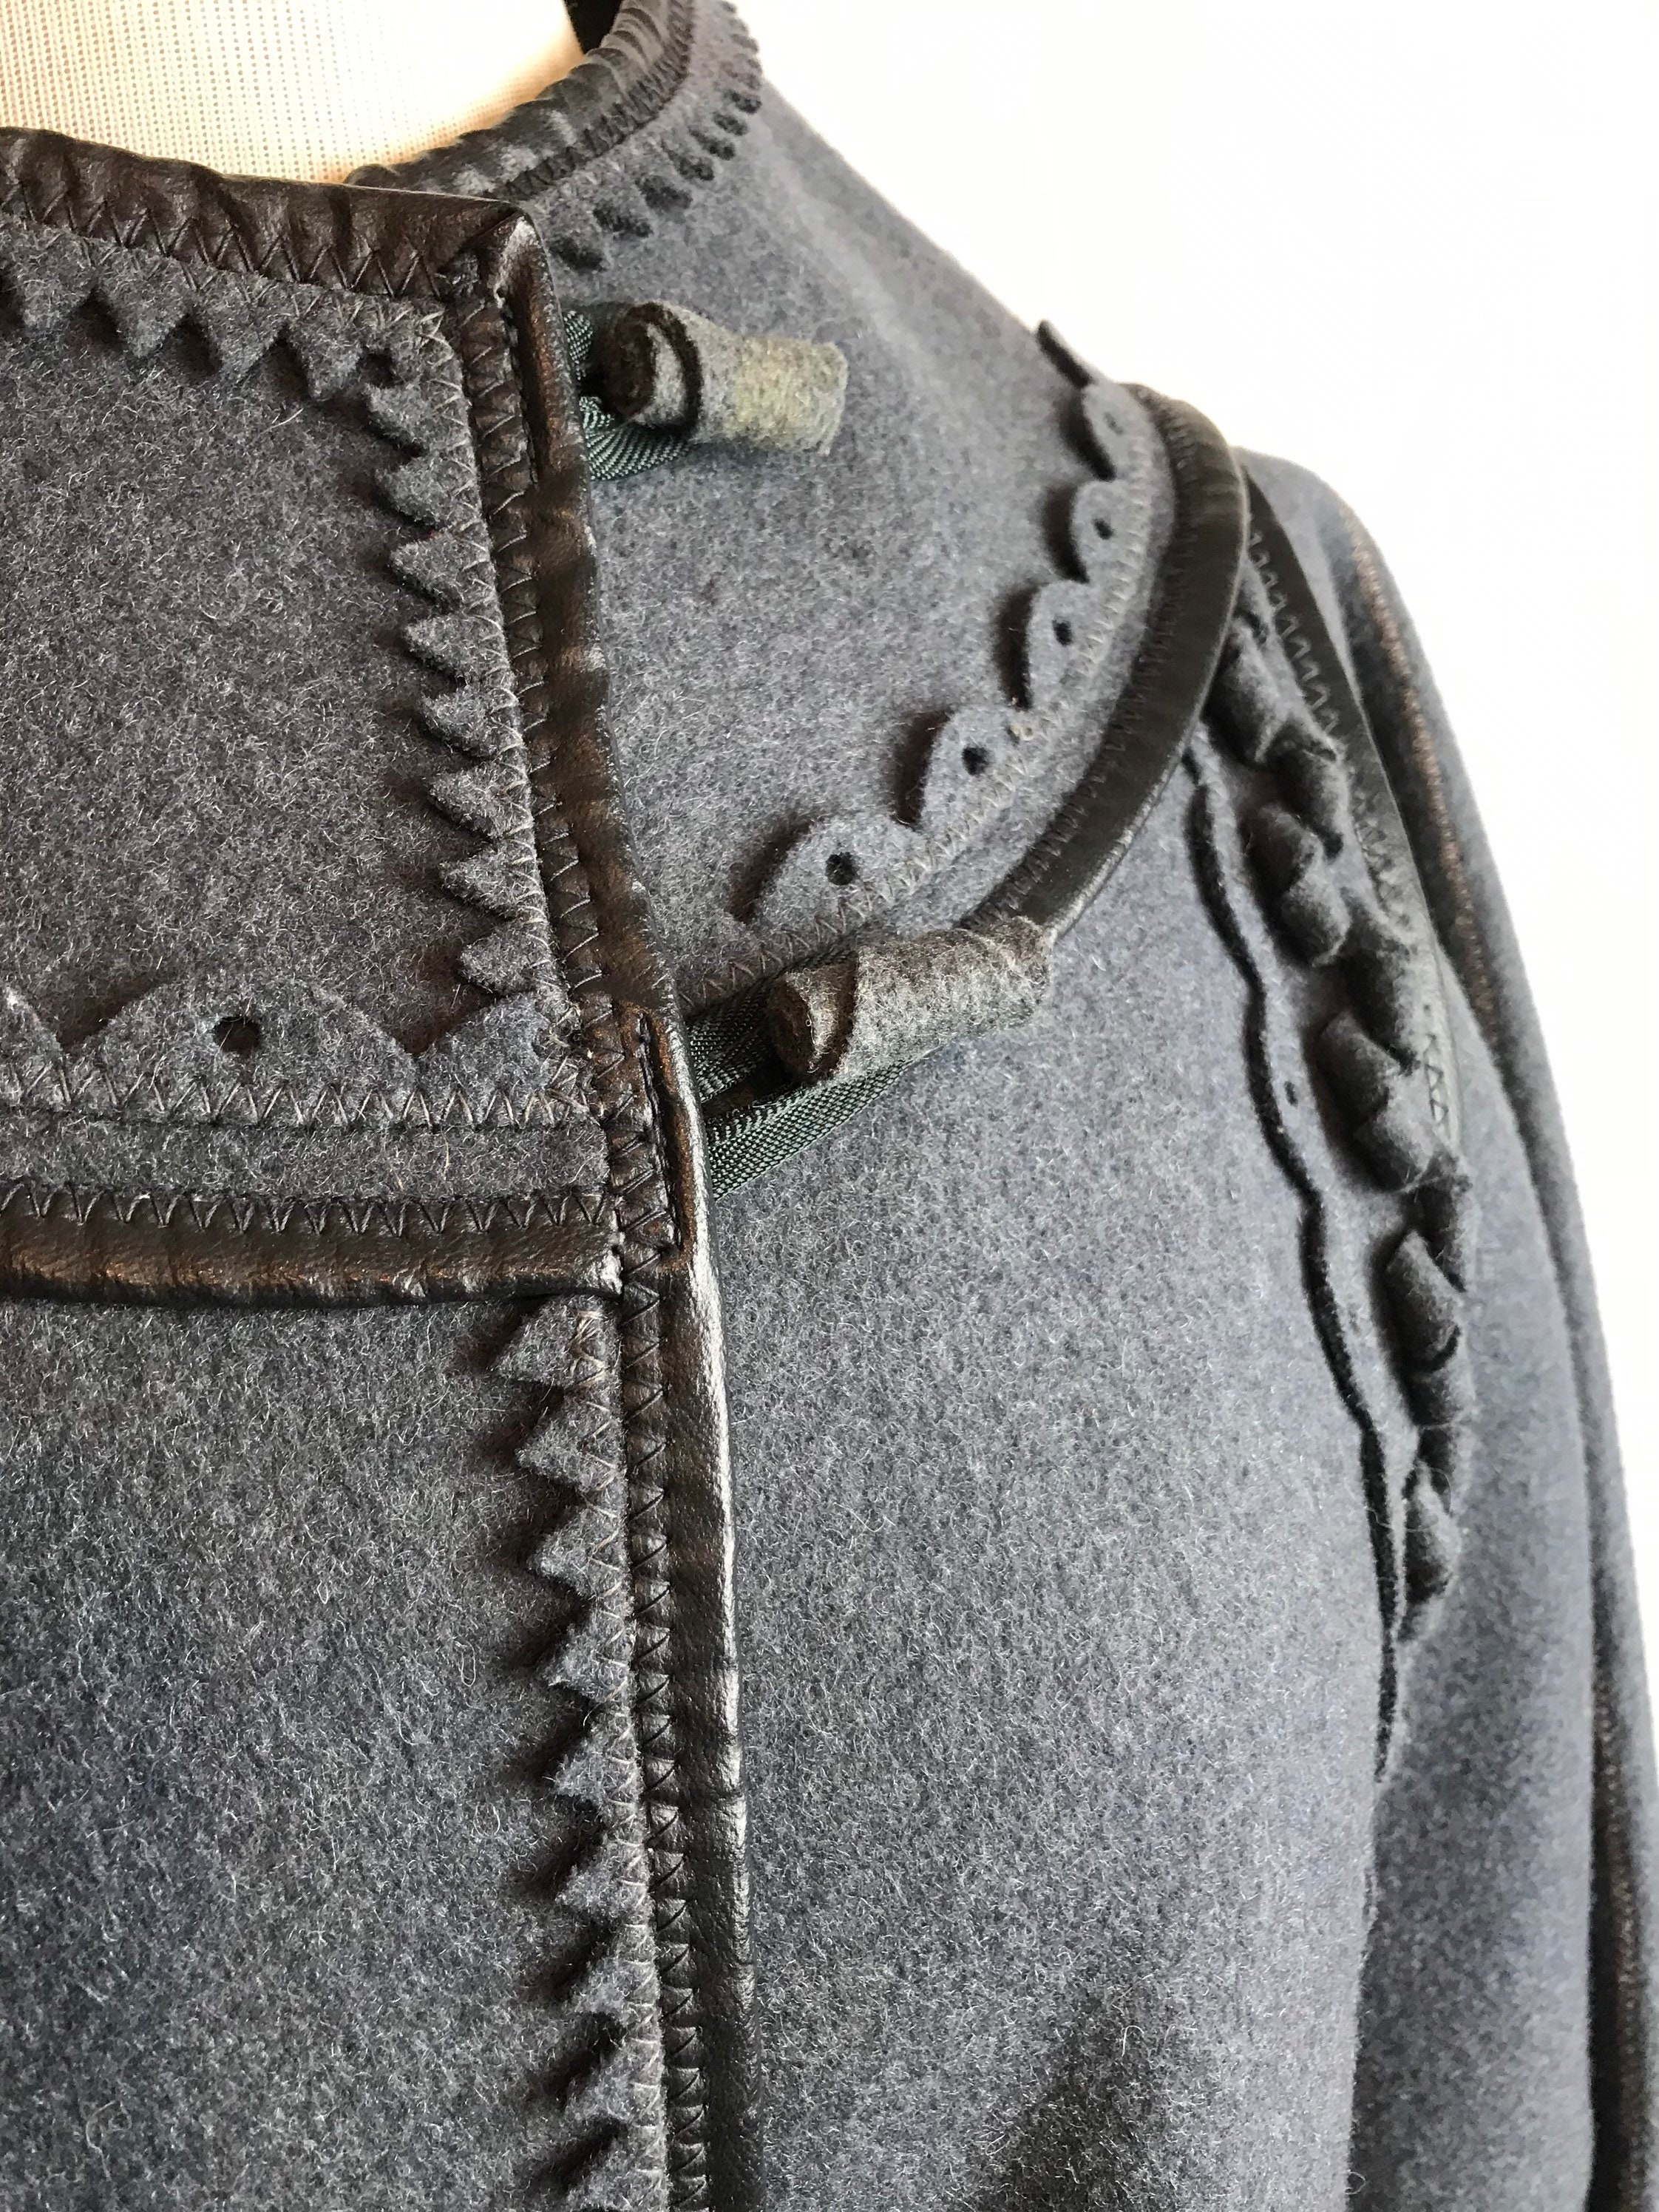 Minimalist Mod Wool Coat Felt Woolen Slate Gray Hand Done - Etsy